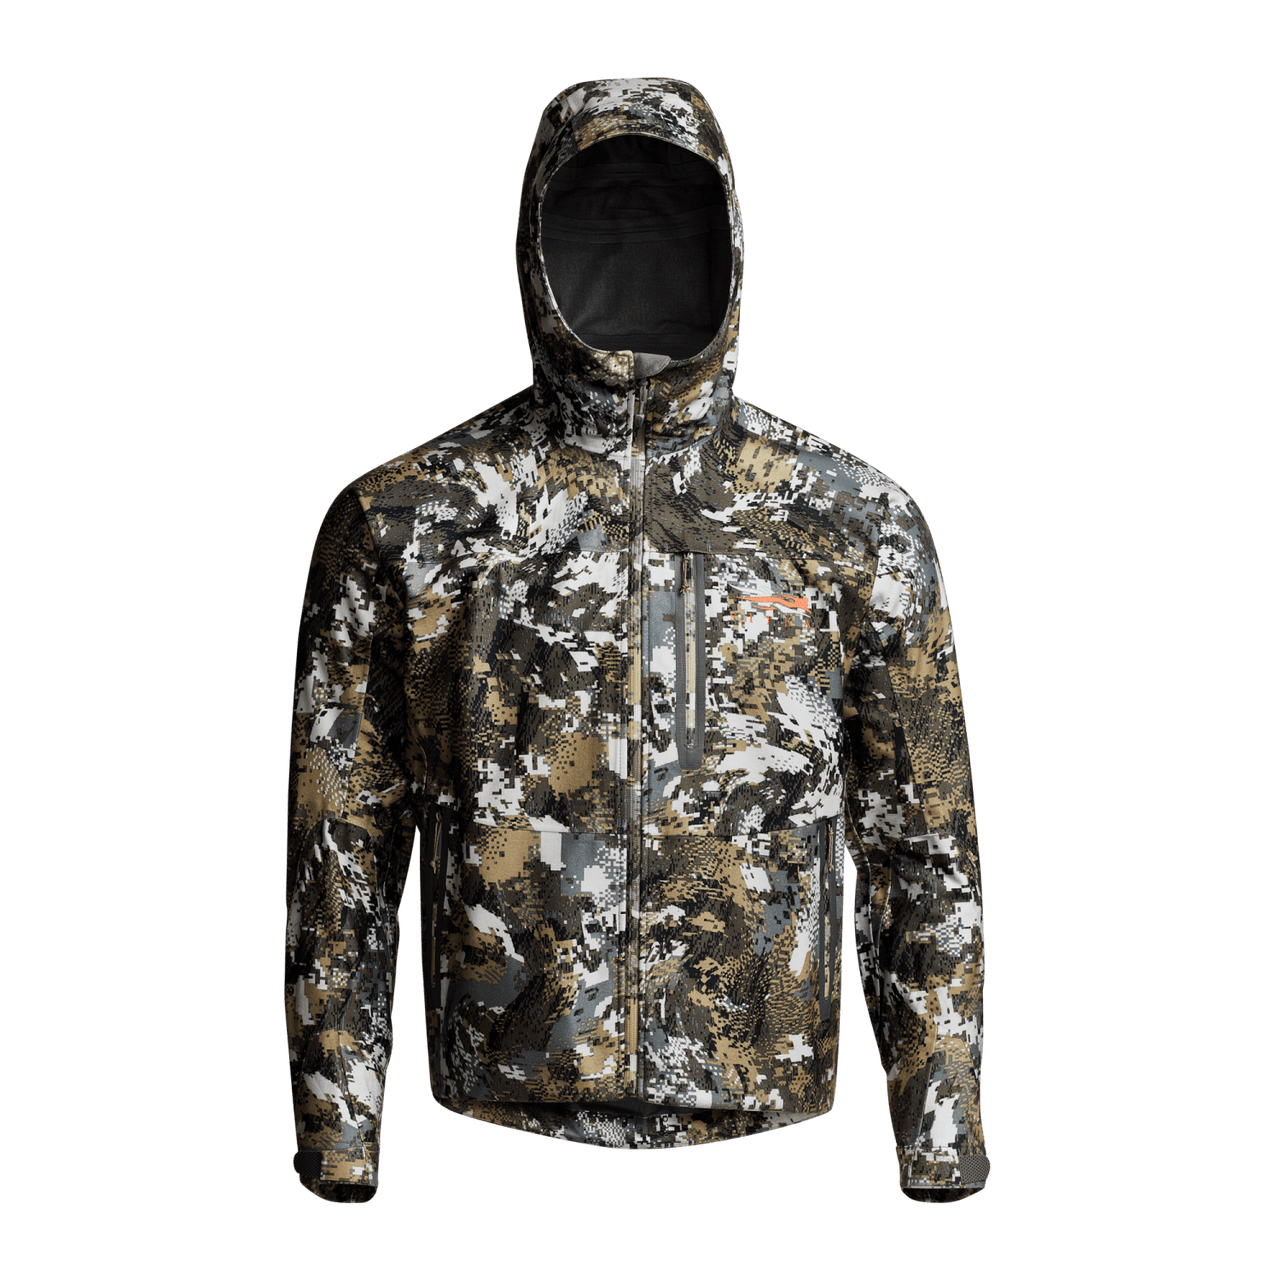 Un manteau SITKA Downpour en camouflage Elevated gris et brun. Logo SITKA sur la poitrine gauche, plusieurs poches, ajustements et un capuchon.